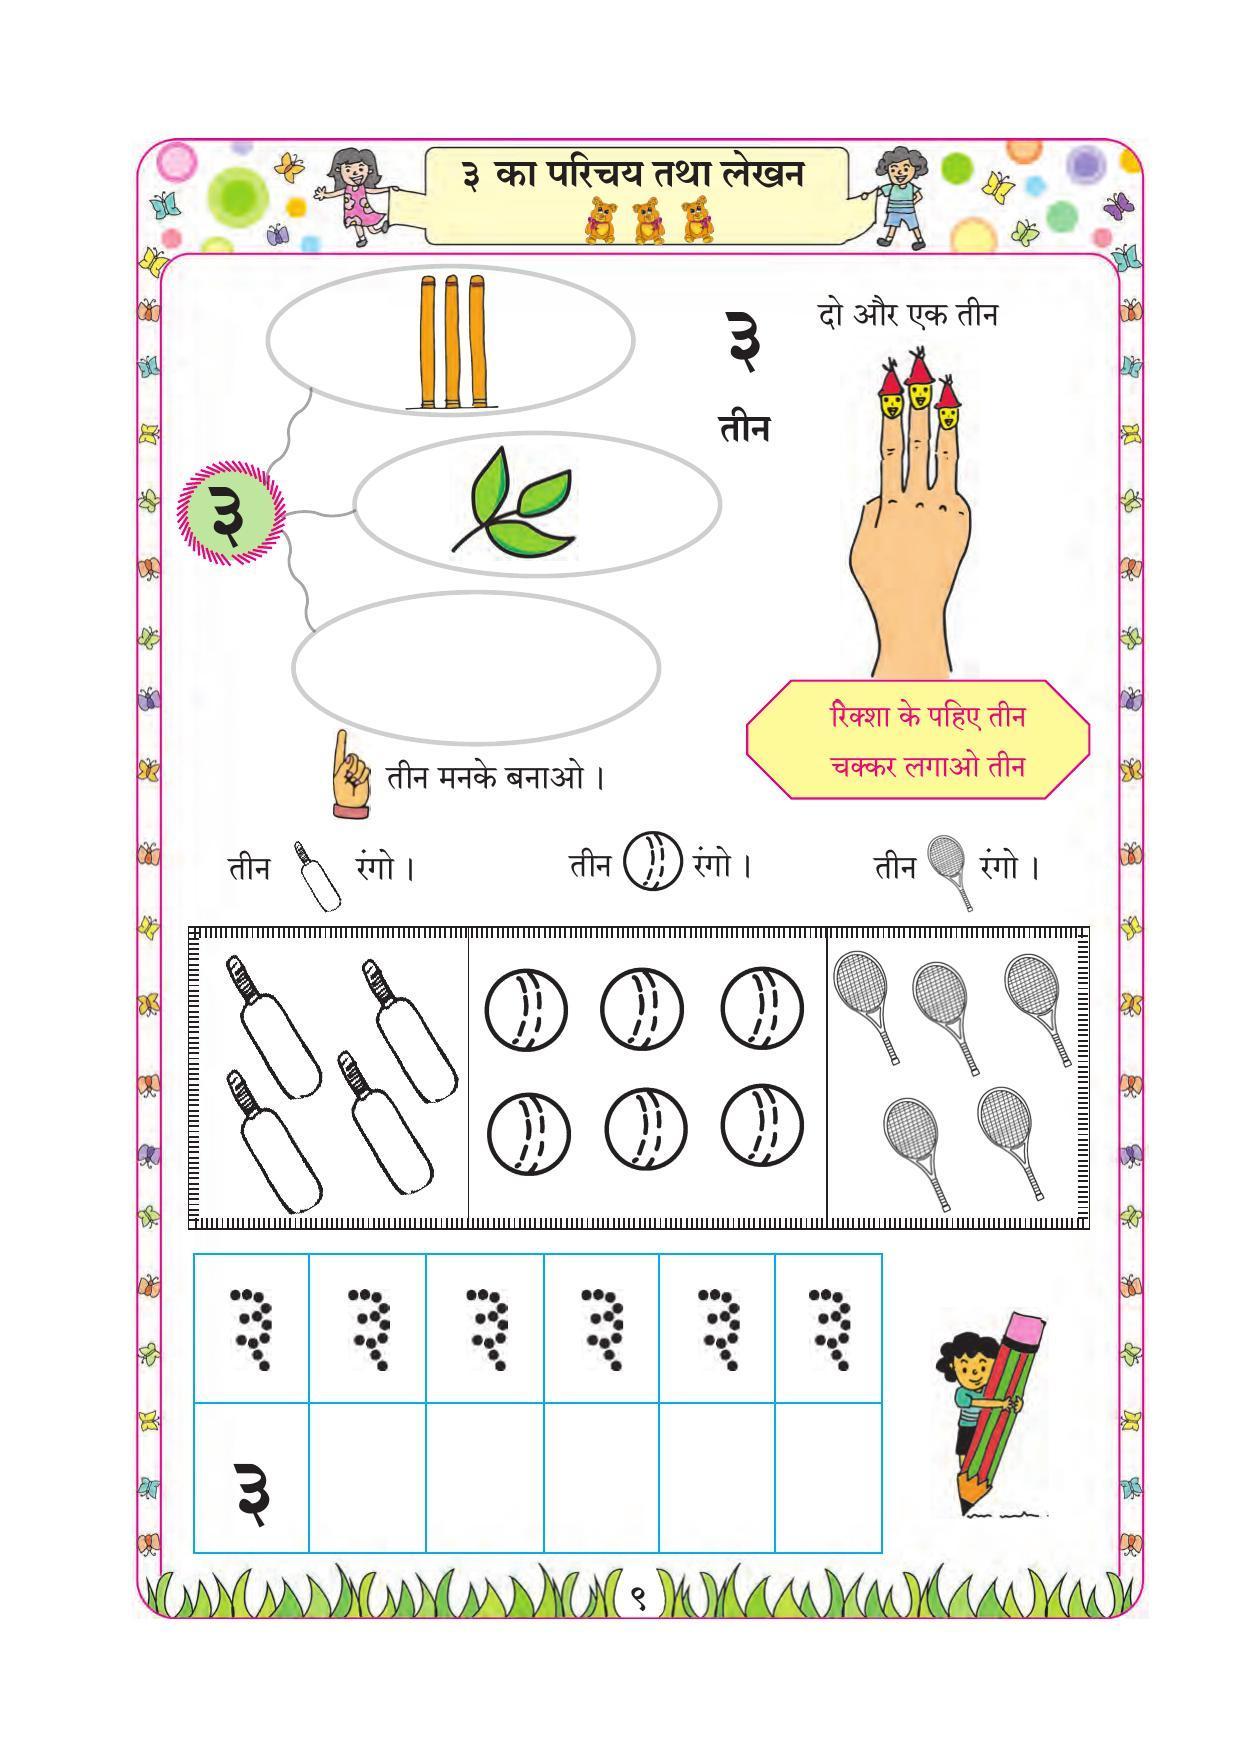 Maharashtra Board Class 1 Maths (Hindi Medium) Textbook - Page 19